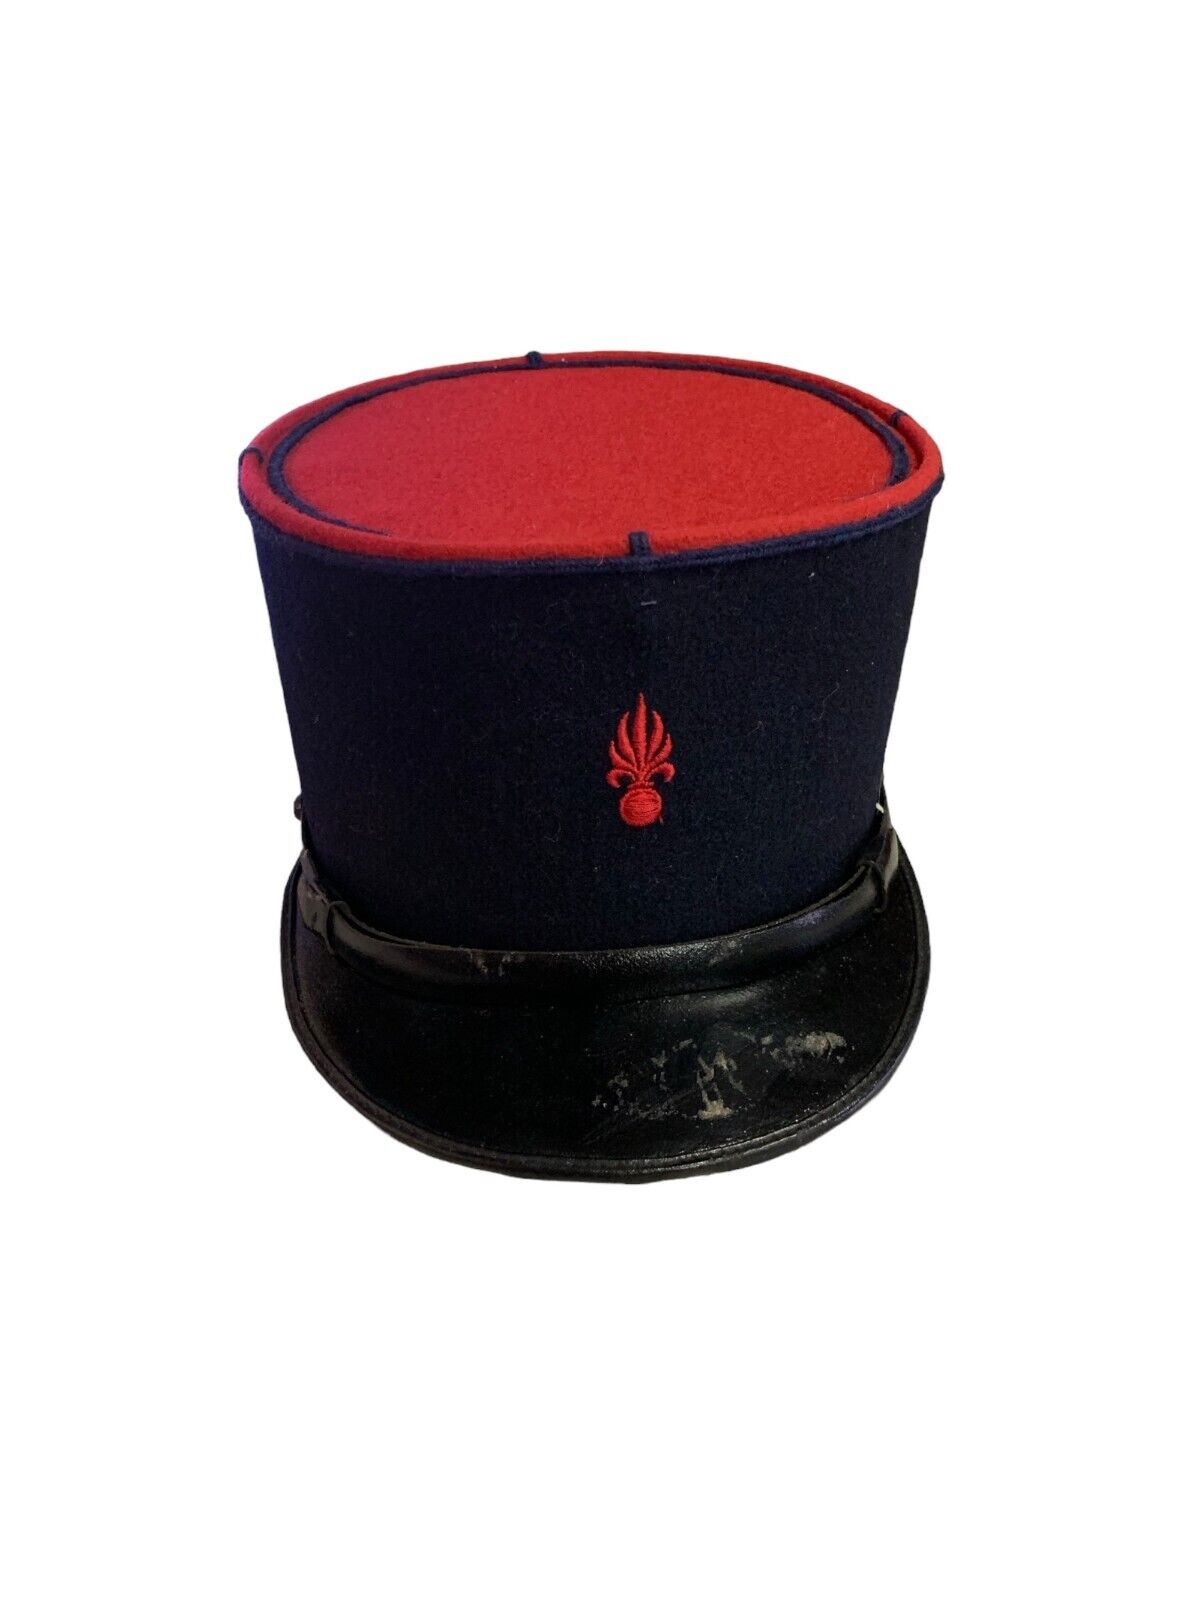 Vintage French Foreign Legion Kepi Hat Gendarmerie Police Blue Red Size 57 1/2